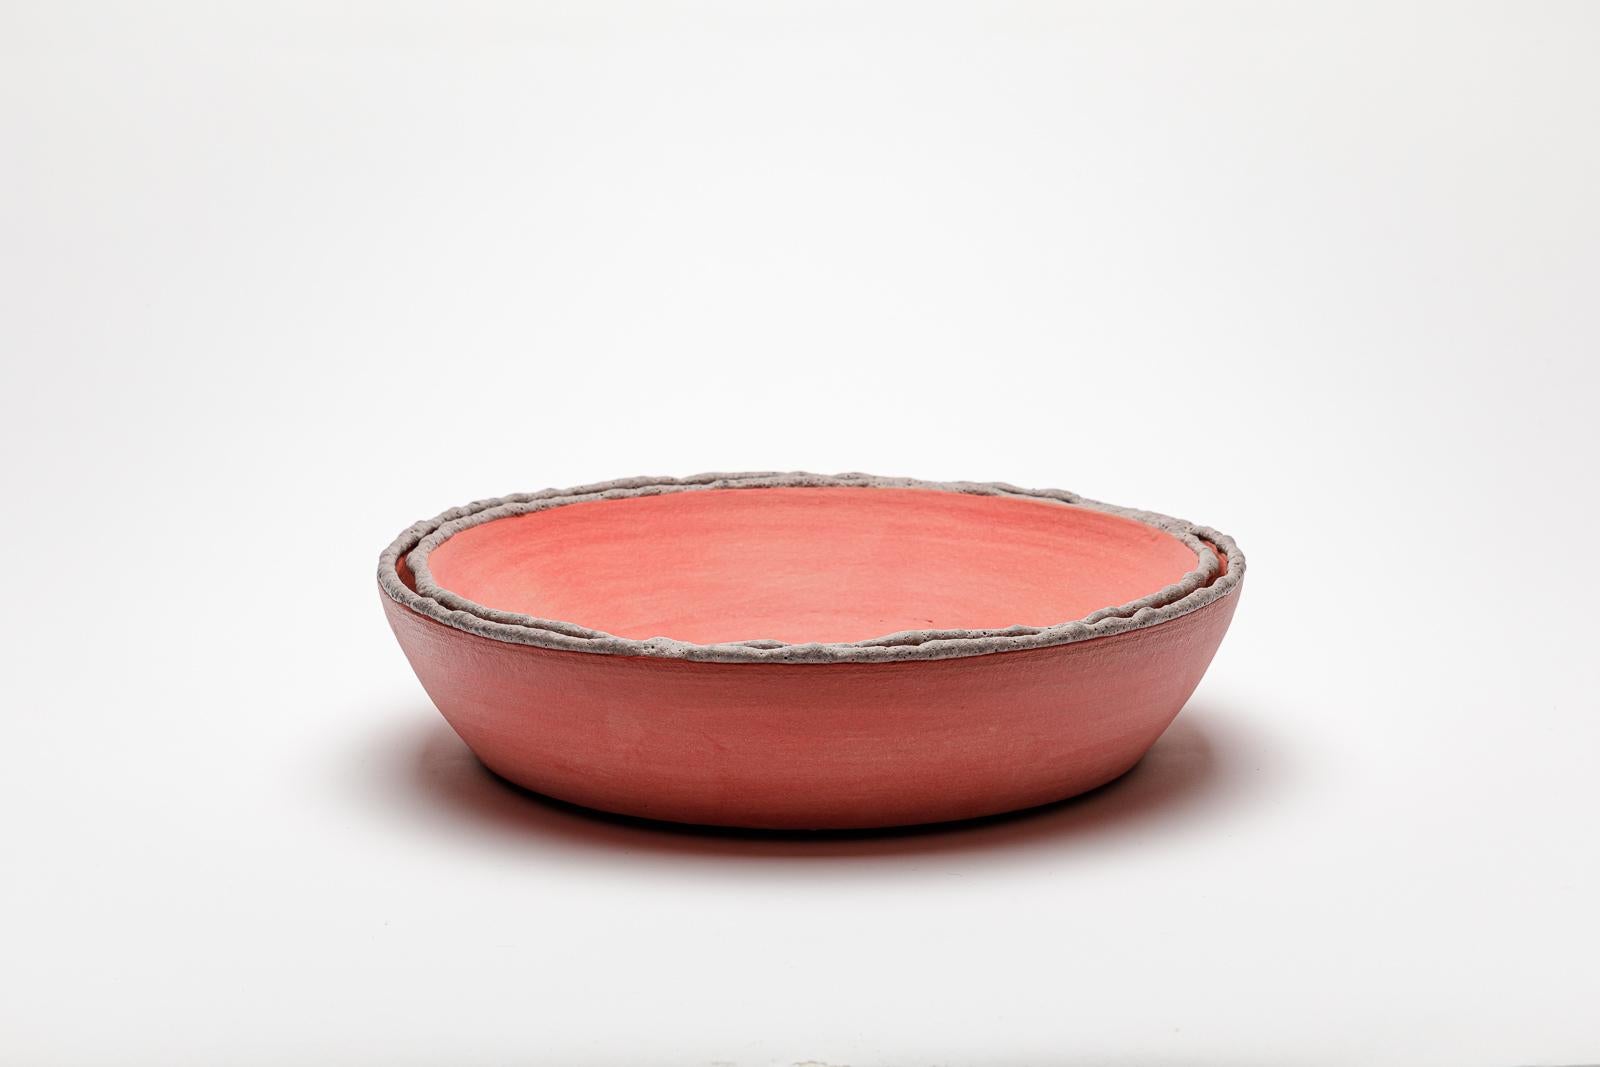 Dunkelrosa glasierter Keramikspiegel von Mia Jensen.
Künstlersignatur unter dem Sockel. CIRCA 2023-2024.
H : 2,7' x 11,6' Zoll.